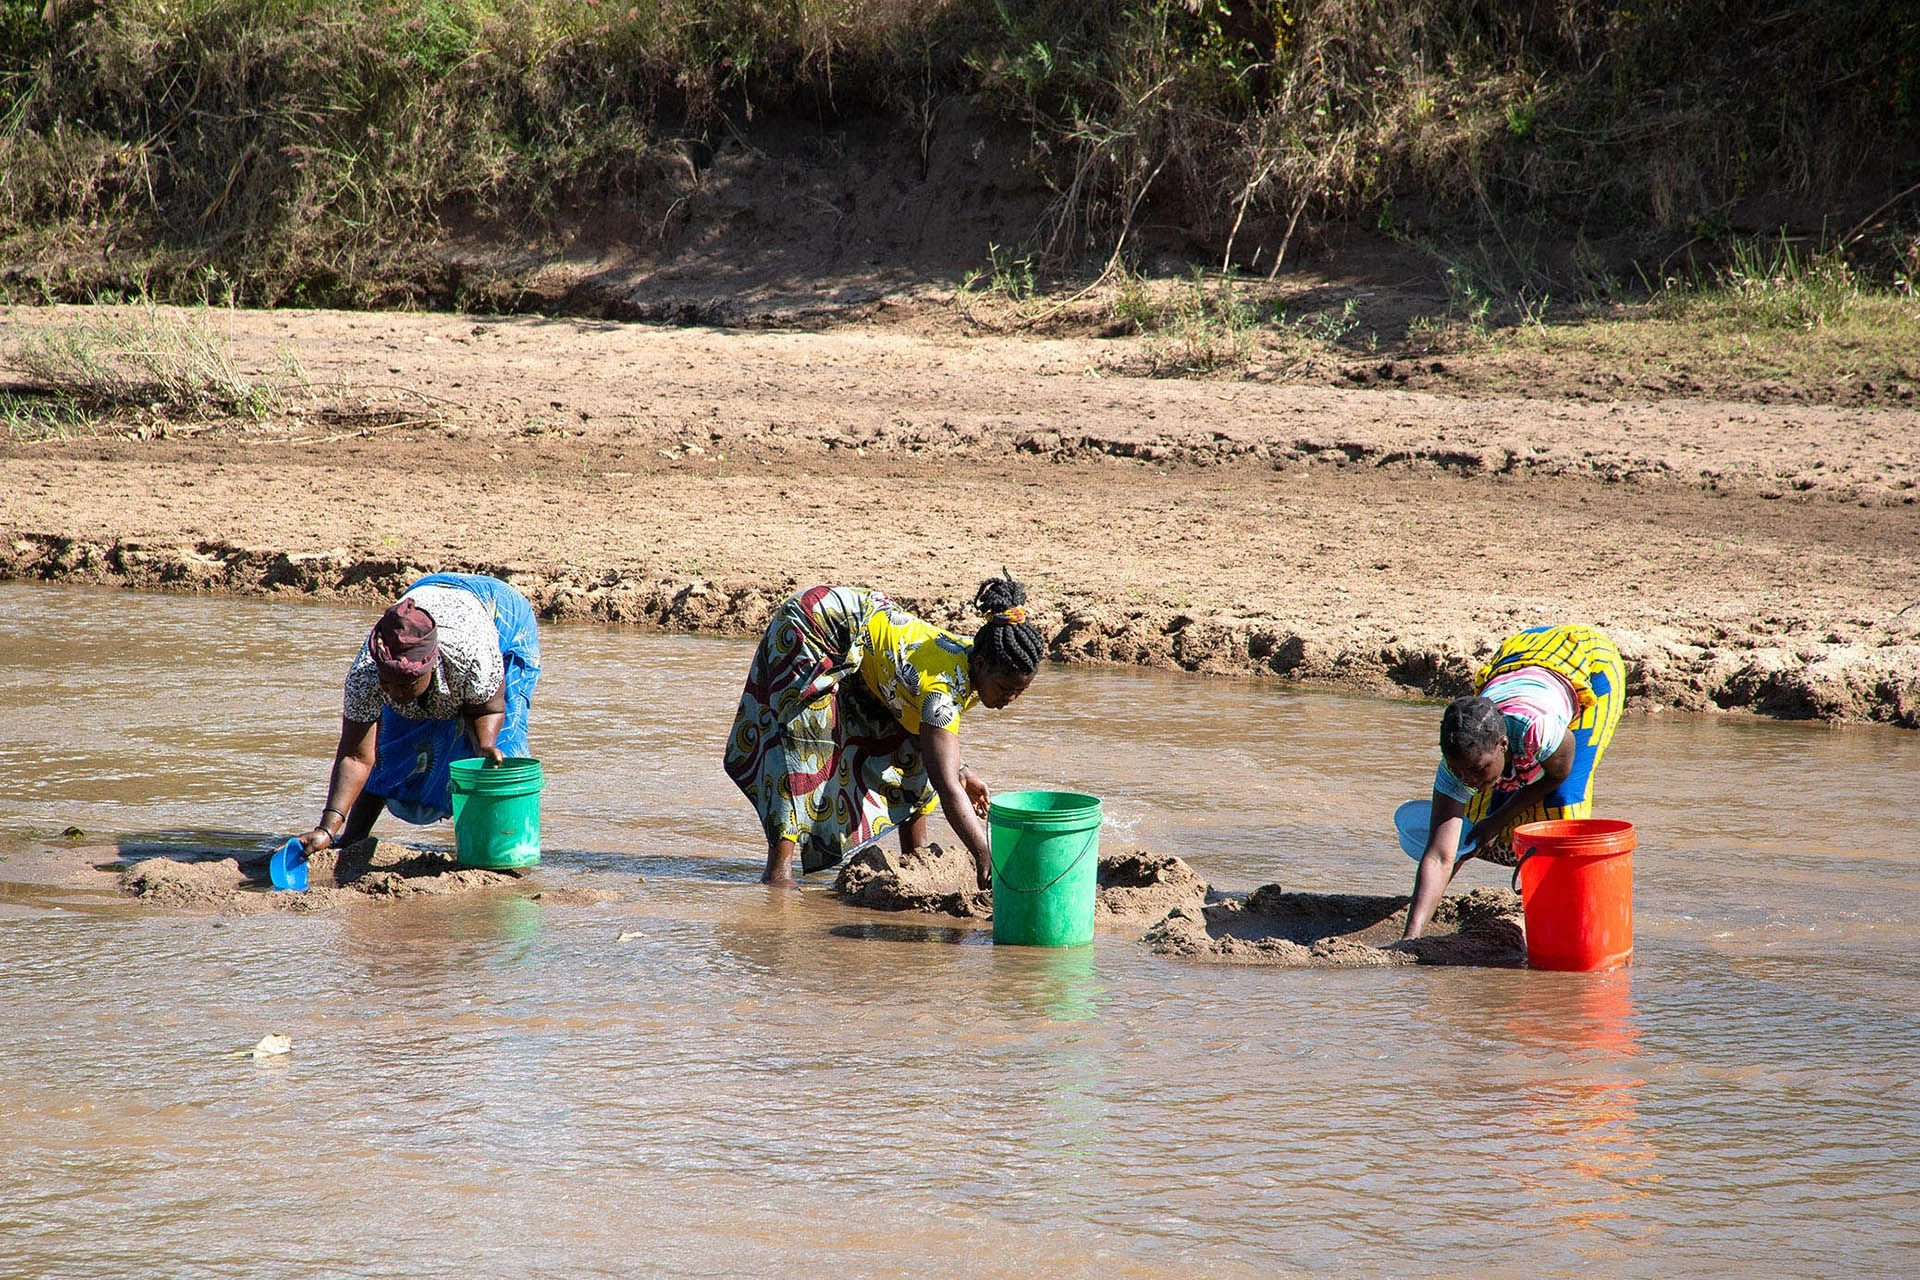 取水的工作多半落在婦女、孩童身上。圖為馬拉威婦女取水。